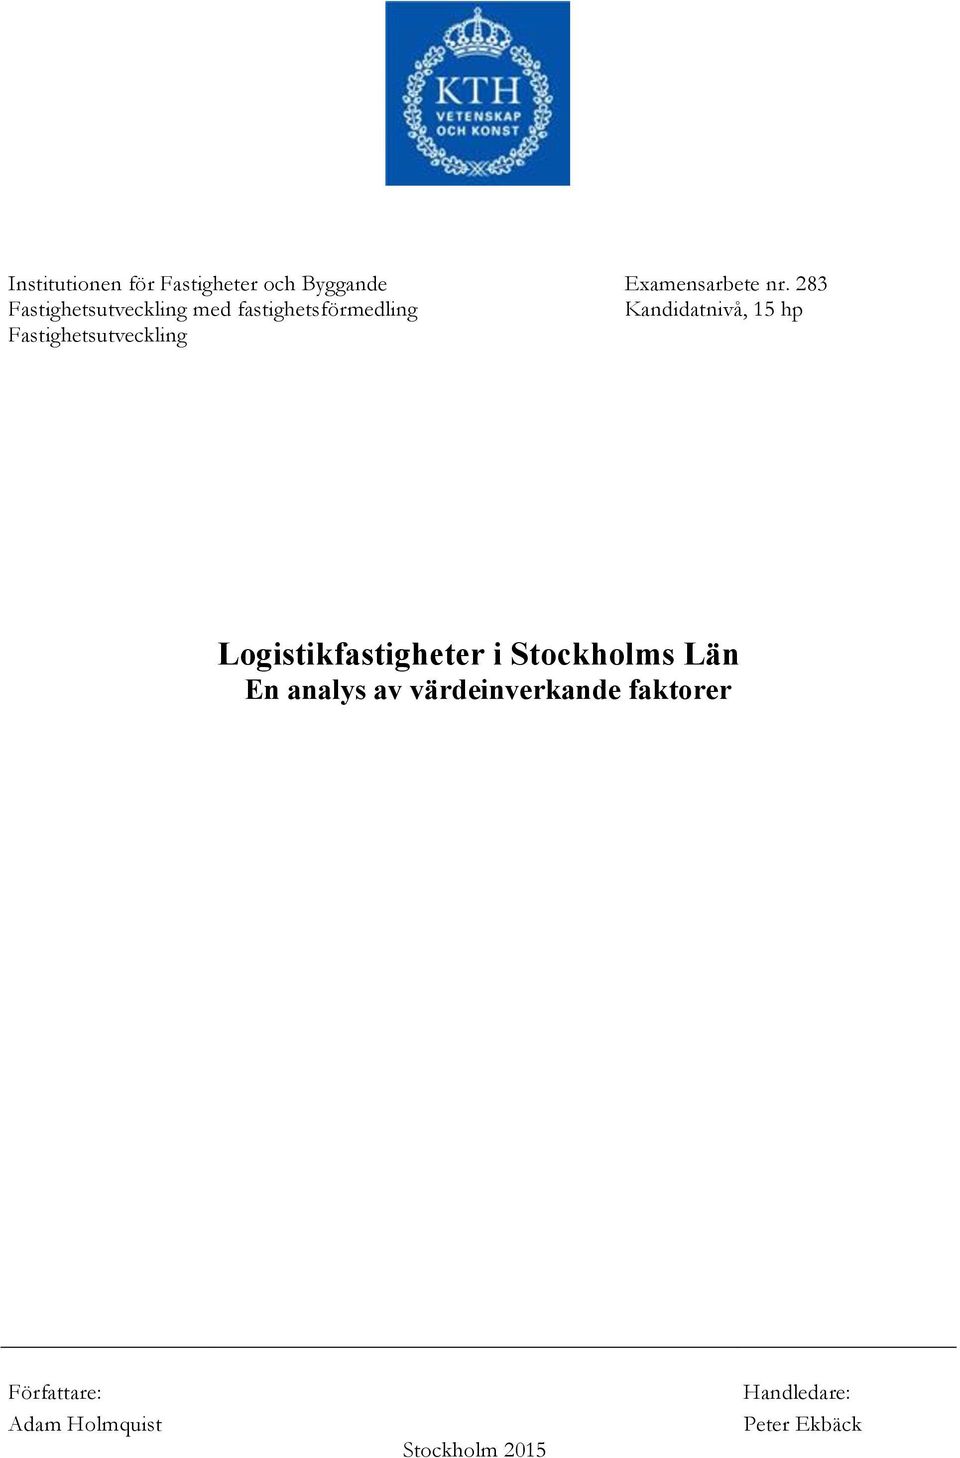 Fastighetsutveckling Logistikfastigheter i Stockholms Län En analys av